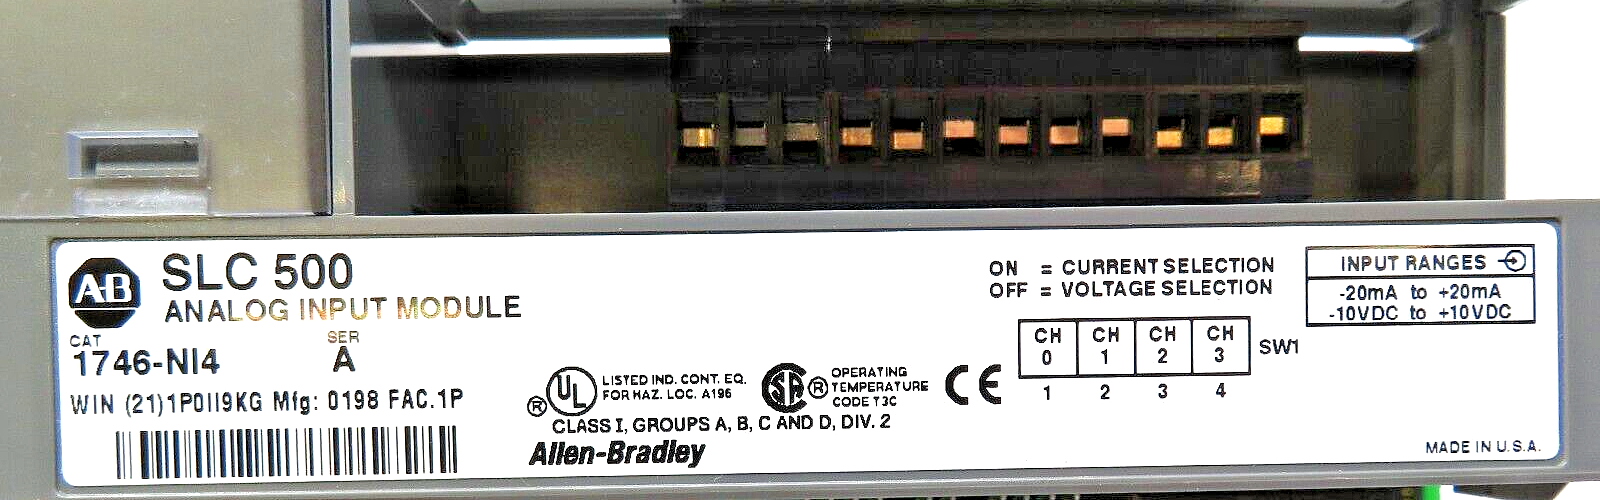 Allen-Bradley 1746-NI4 SLC 500 Analog Input Module Series A